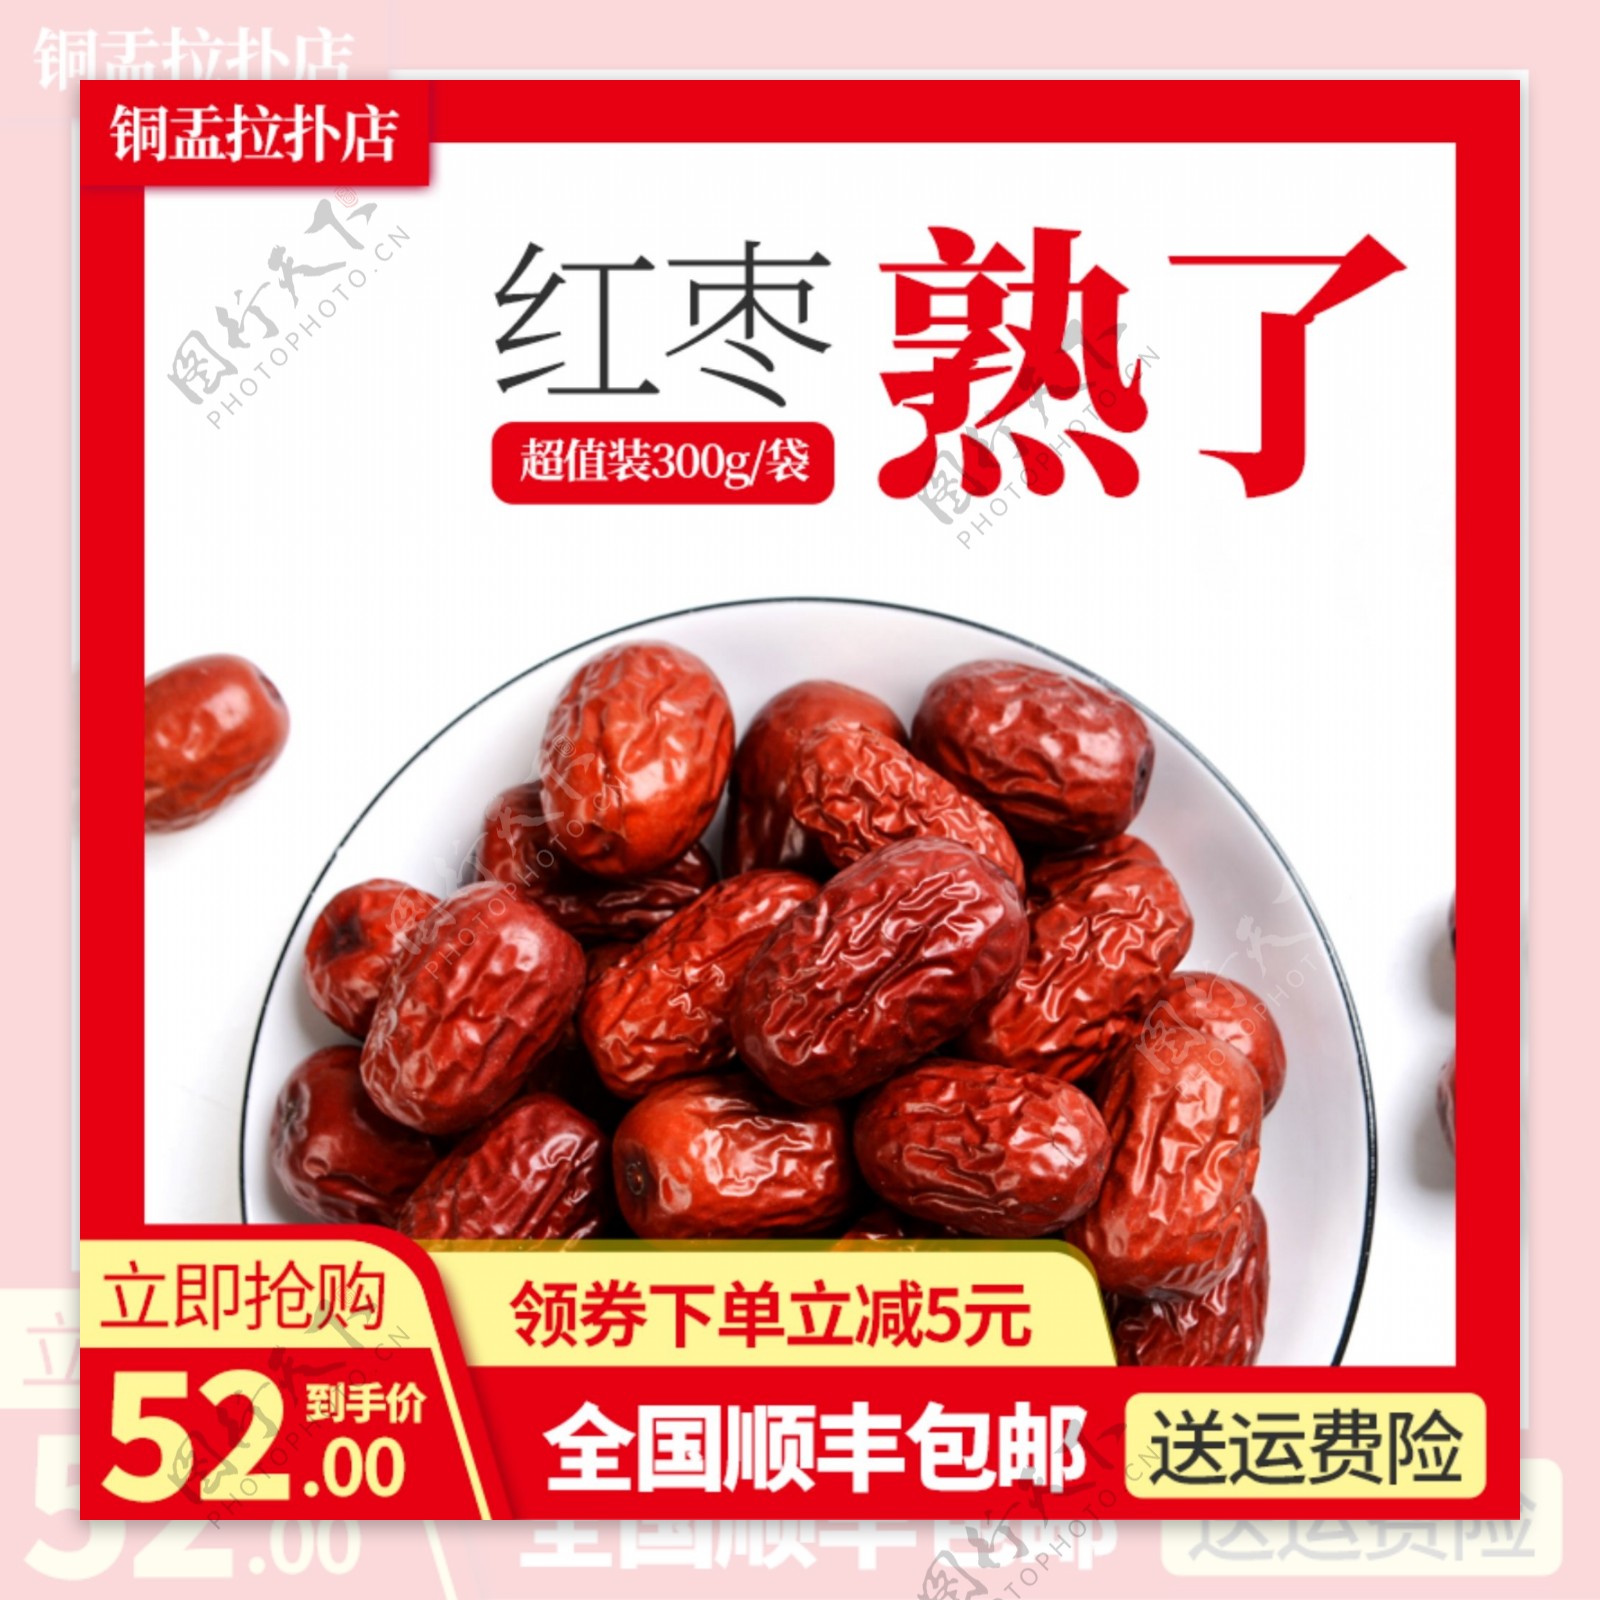 淘宝食品主图红枣促销活动主图直通车模板